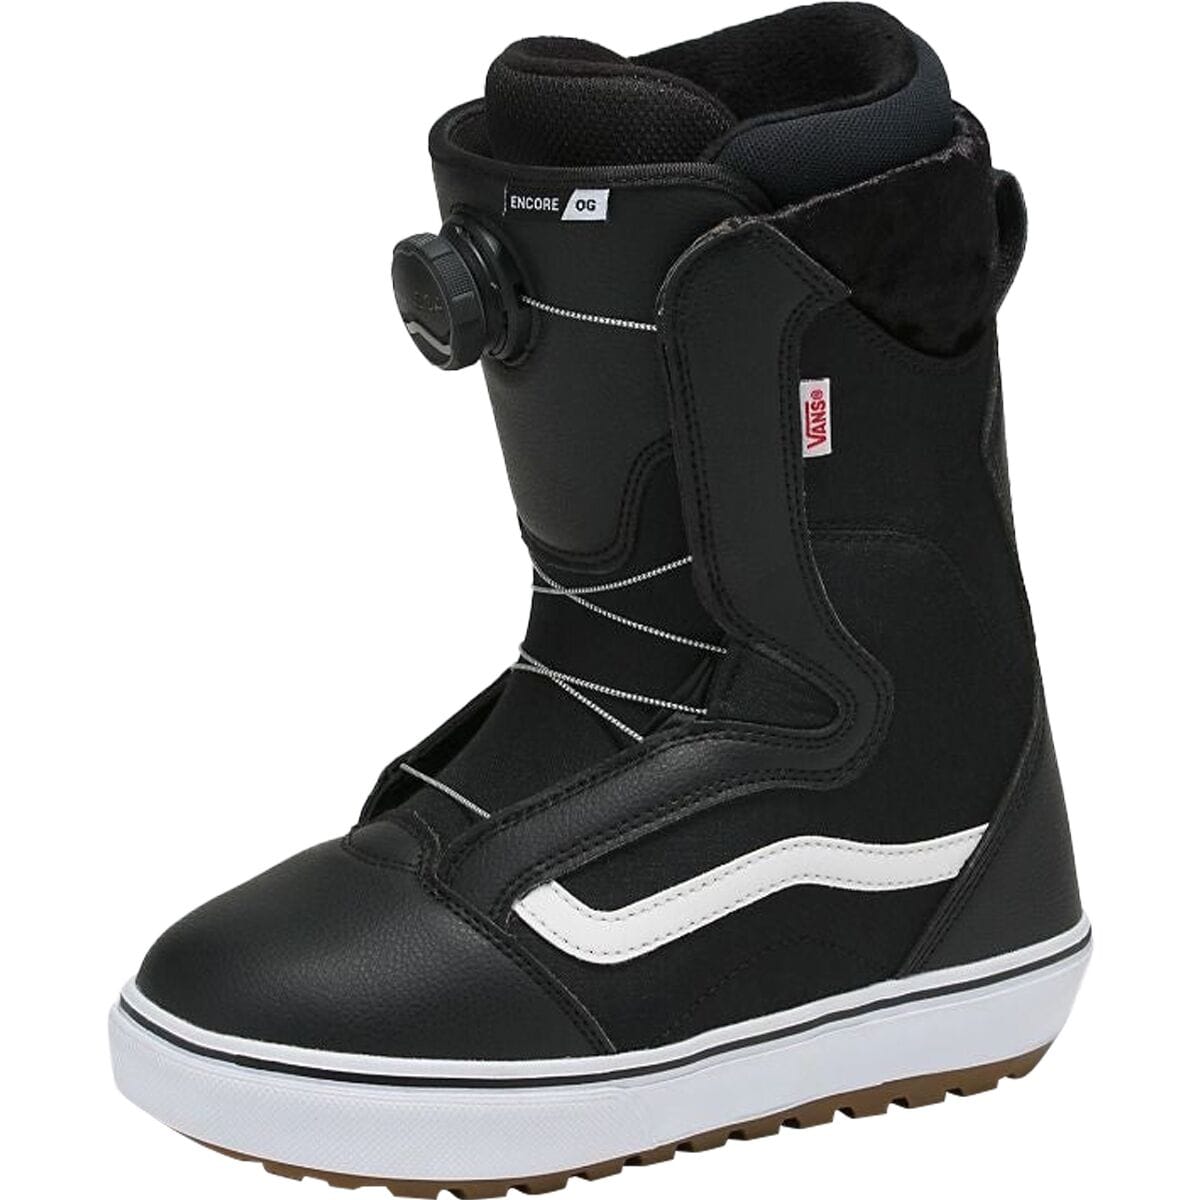 Vans Encore OG BOA Snowboard Boot - 2025 - Women's Black/White 20